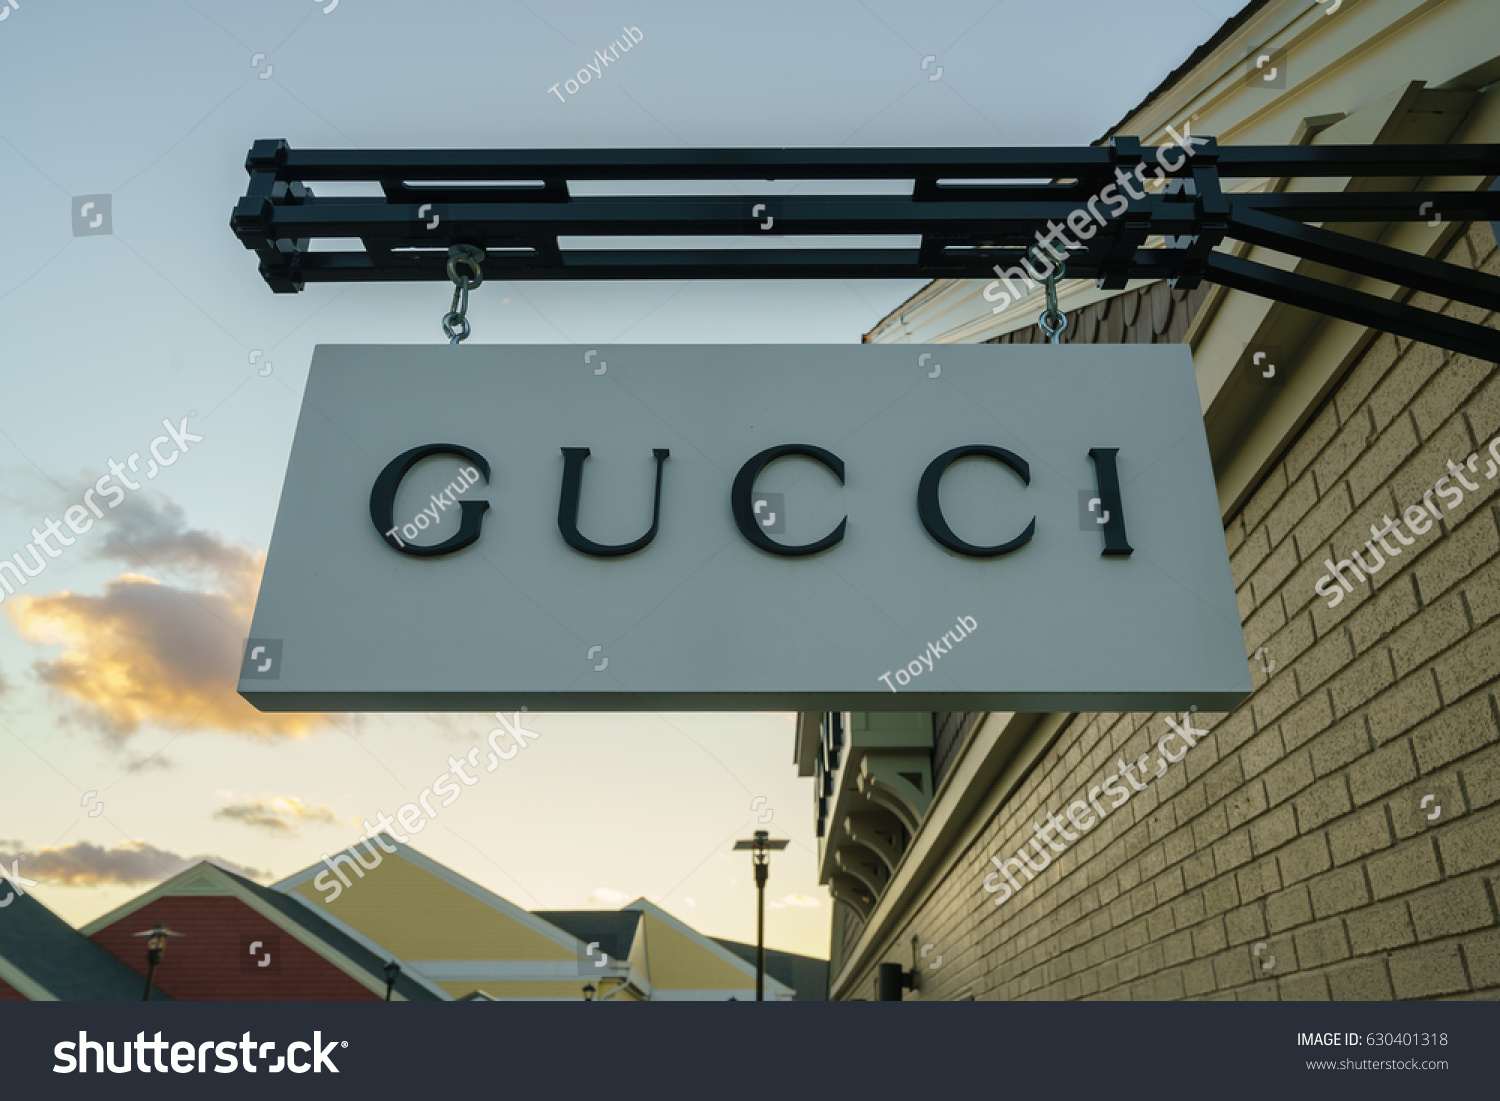 Woodbury New York Oct 26 Gucci Stock Photo 630401318 - Shutterstock